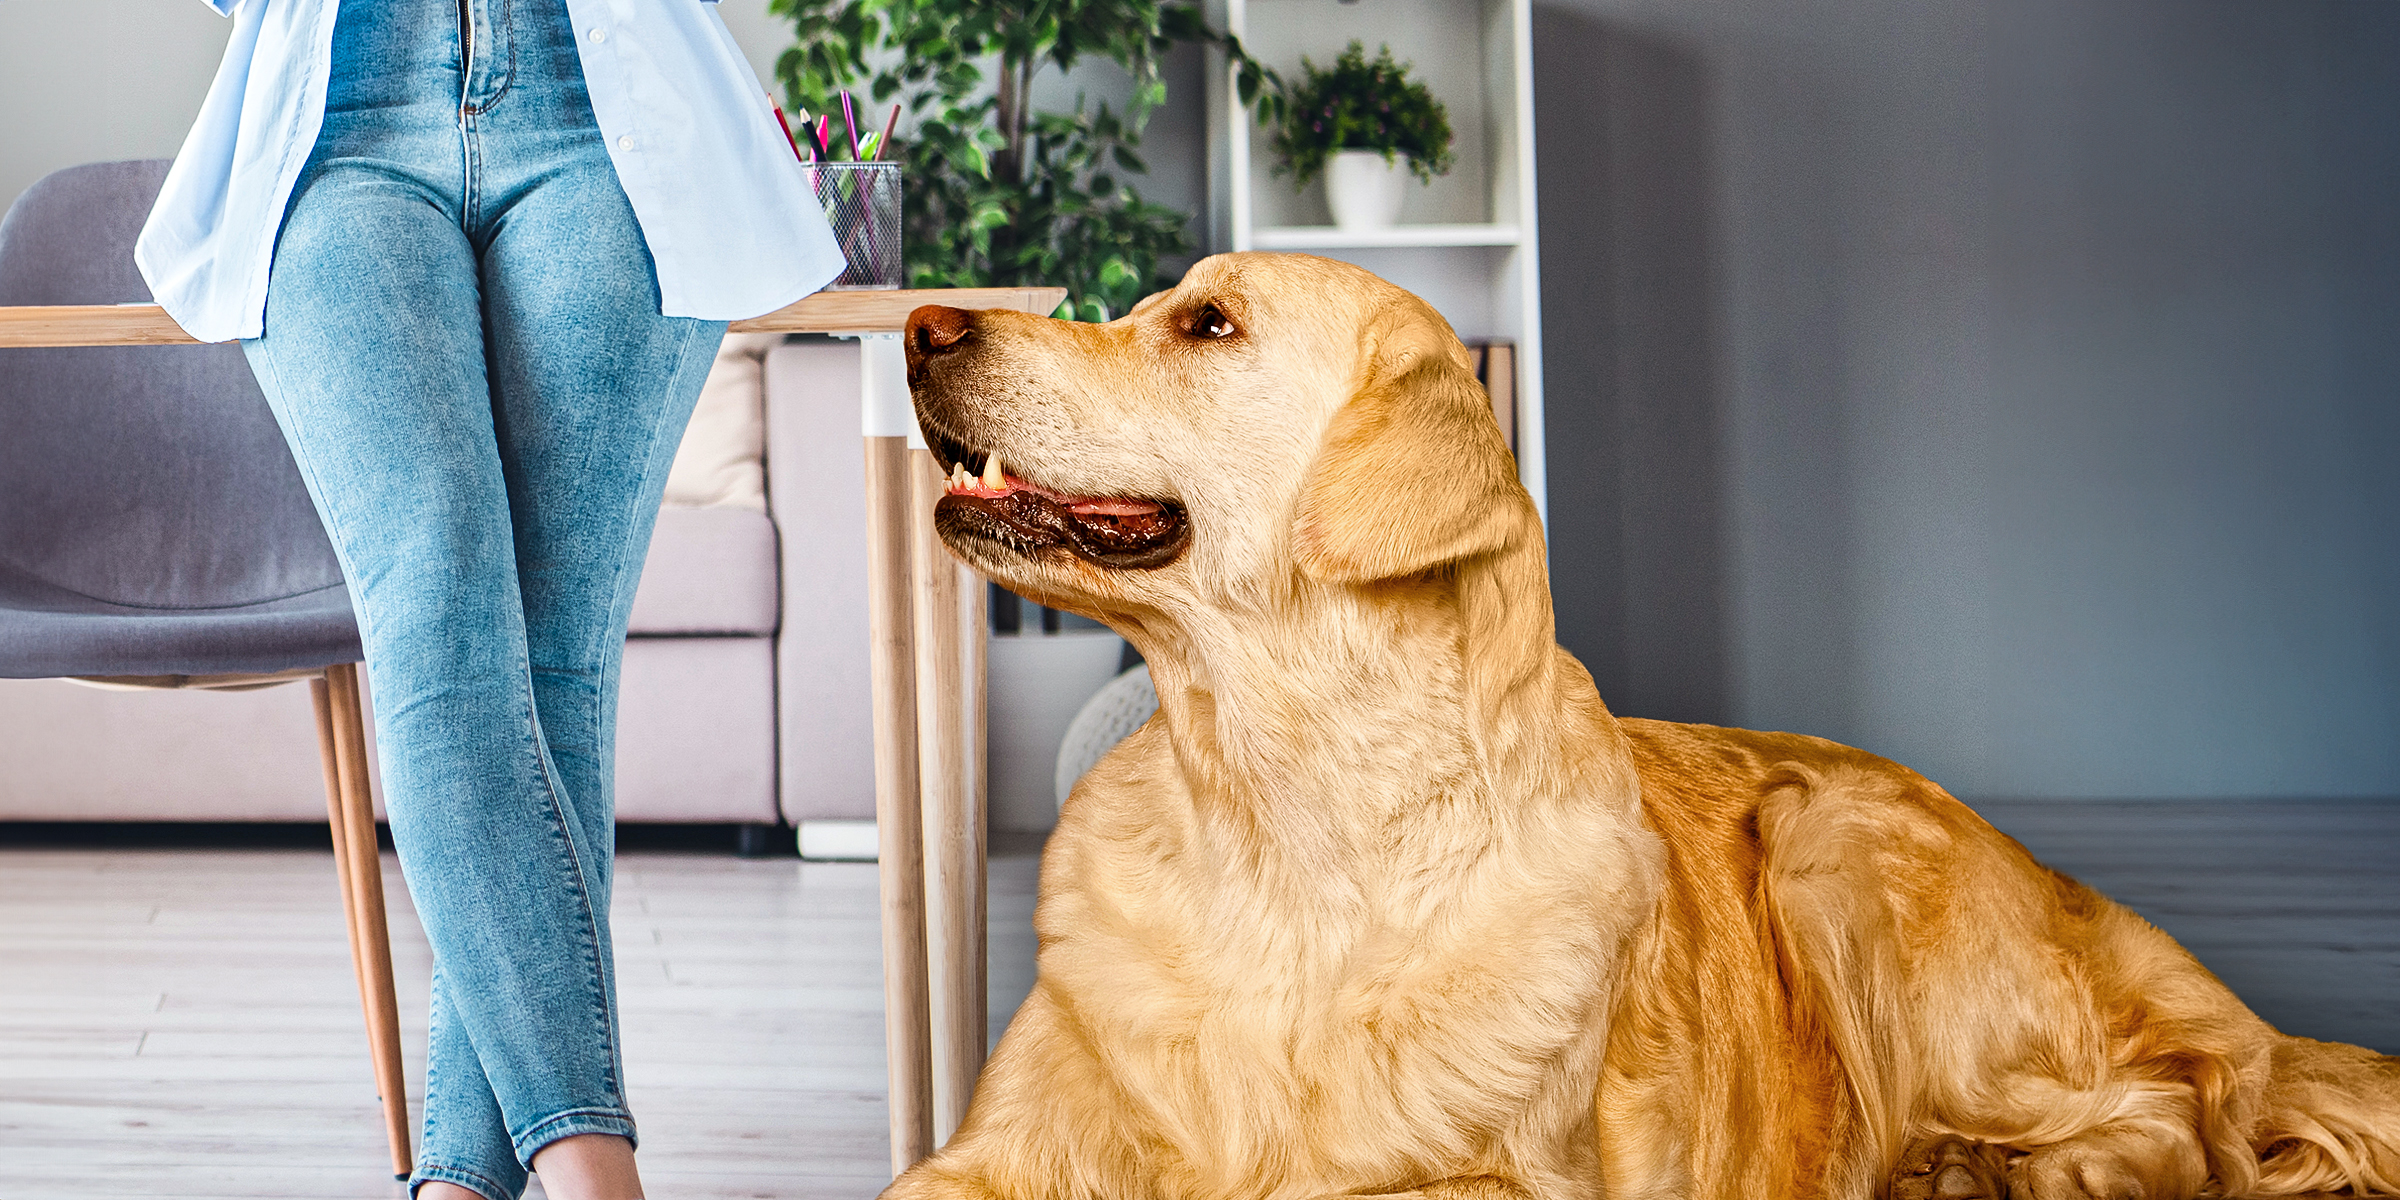 Un chien assis près d'une femme portant un jean | Source : Shutterstock